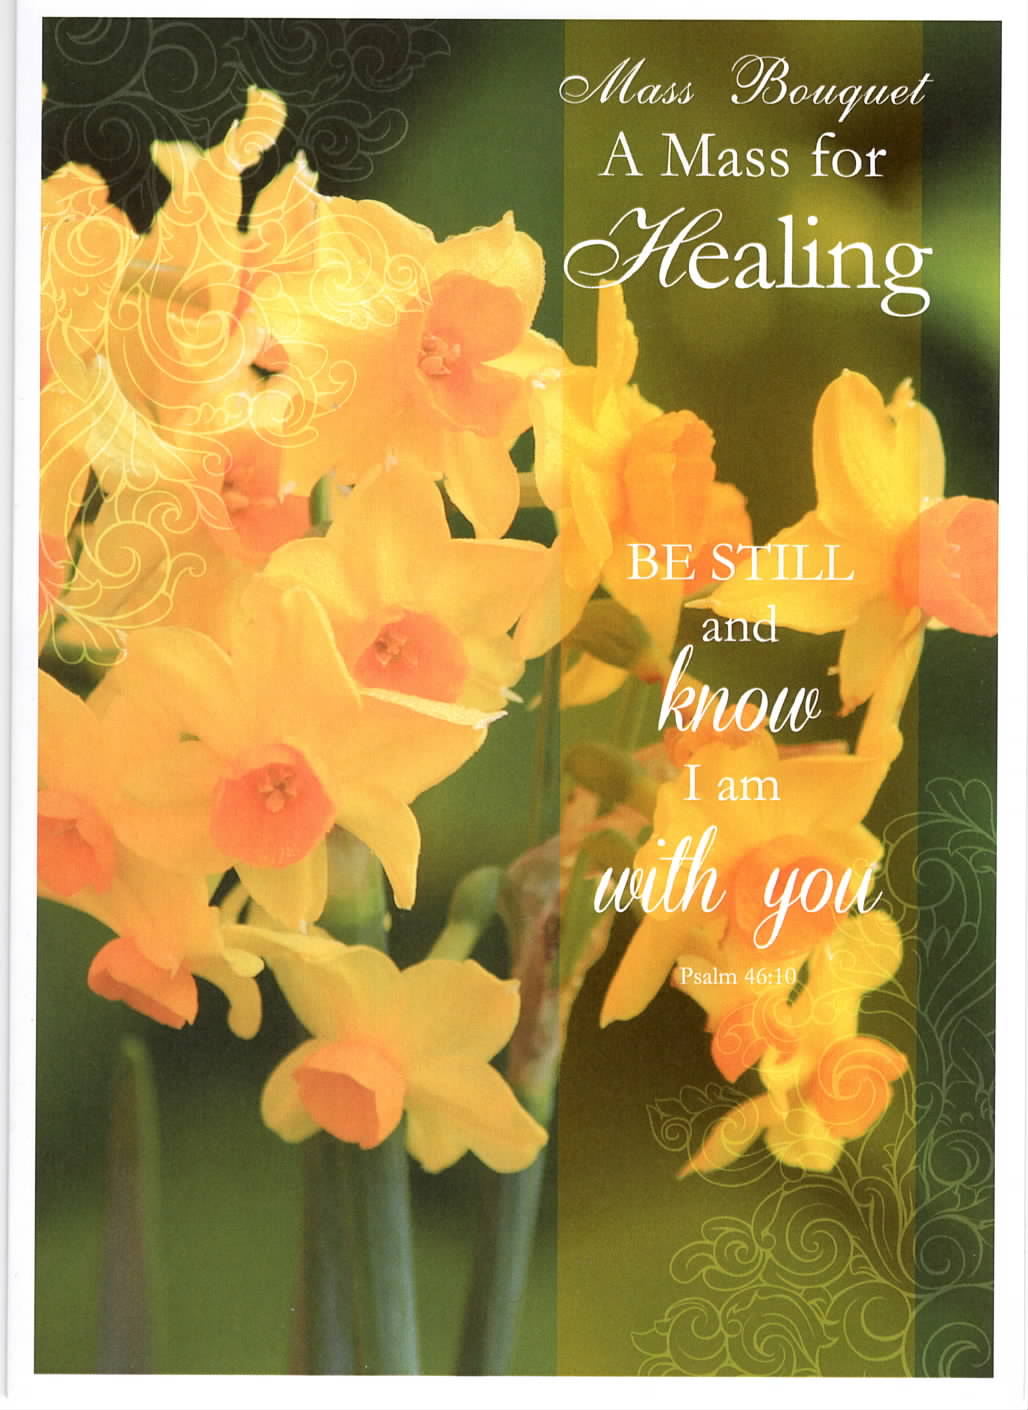 Healing Mass Bouquet